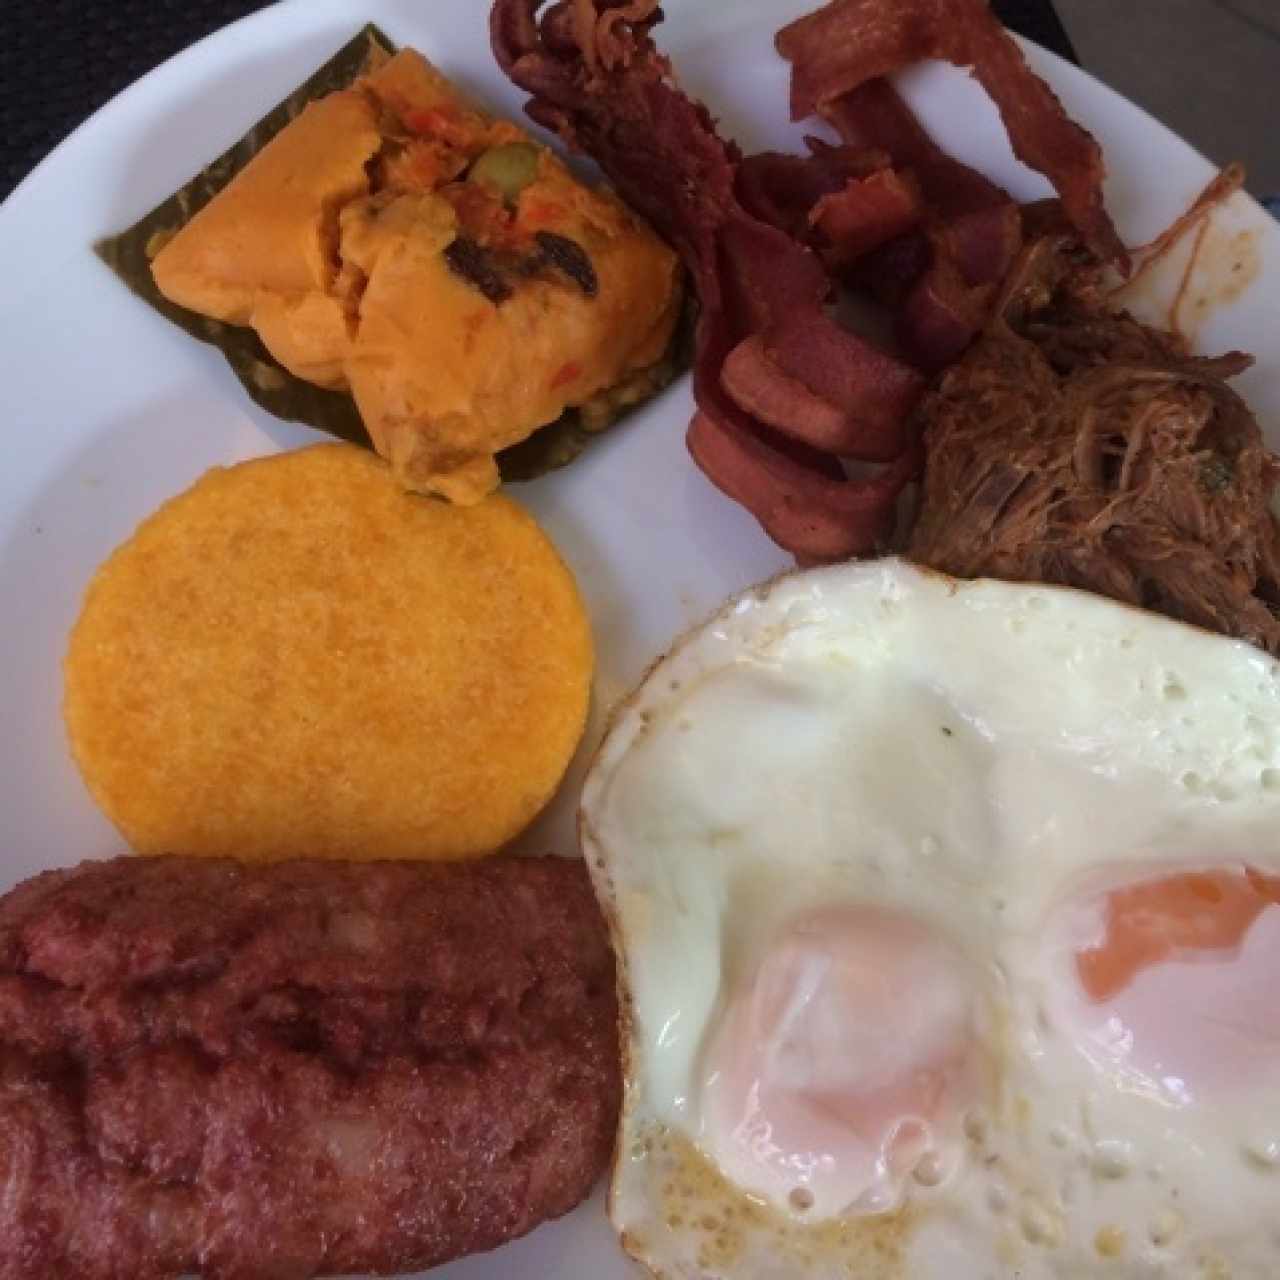 Nuestras combinaciones - Desayuno Café Madero